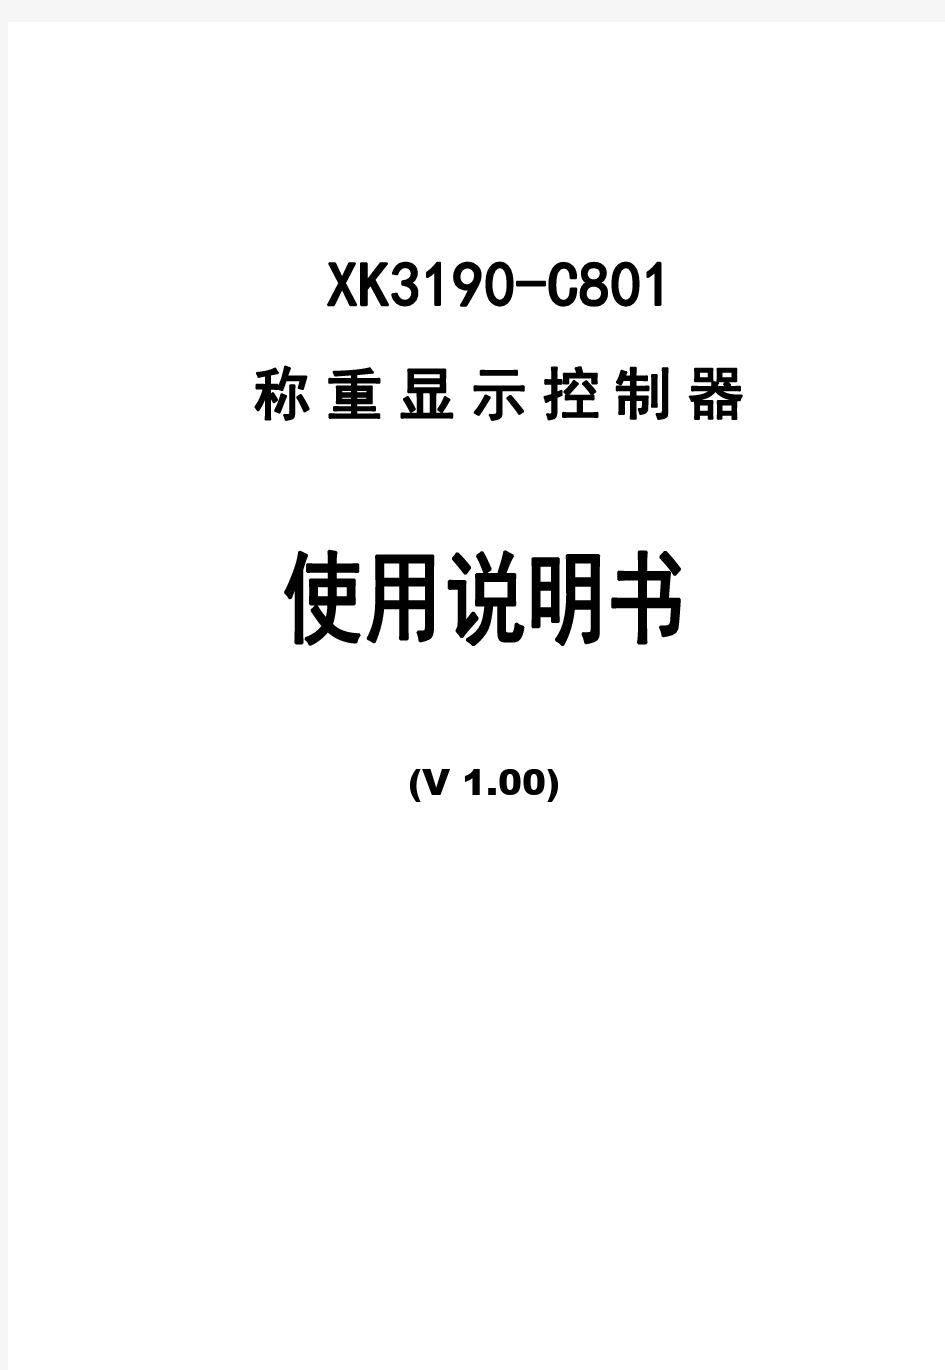 上海yaohua耀华C801说明书